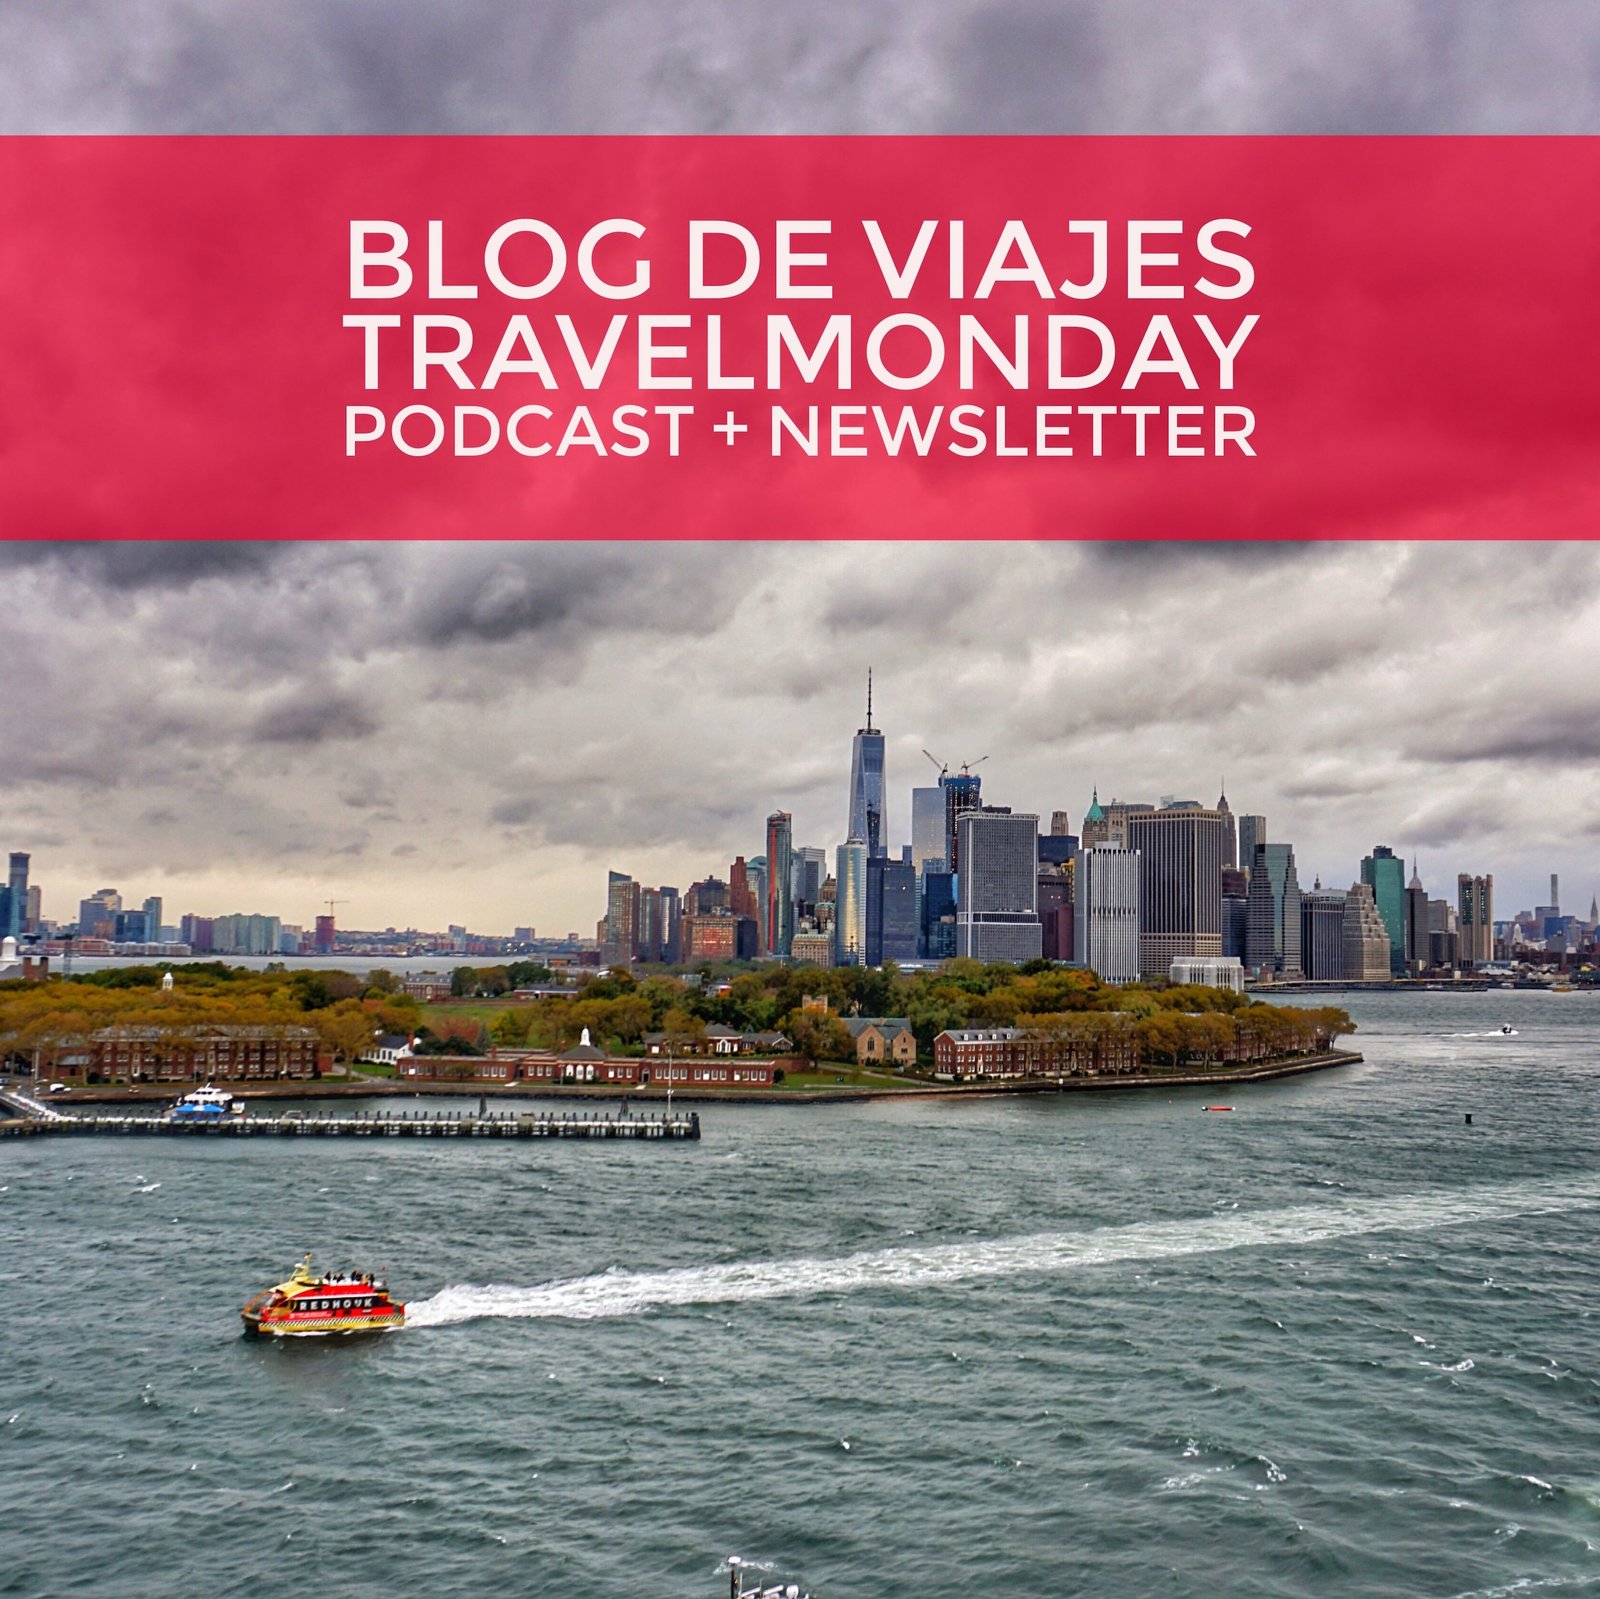 Blog de Viajes TravelMonday: balanza comercial turistica argentina + actualizaciones en 360